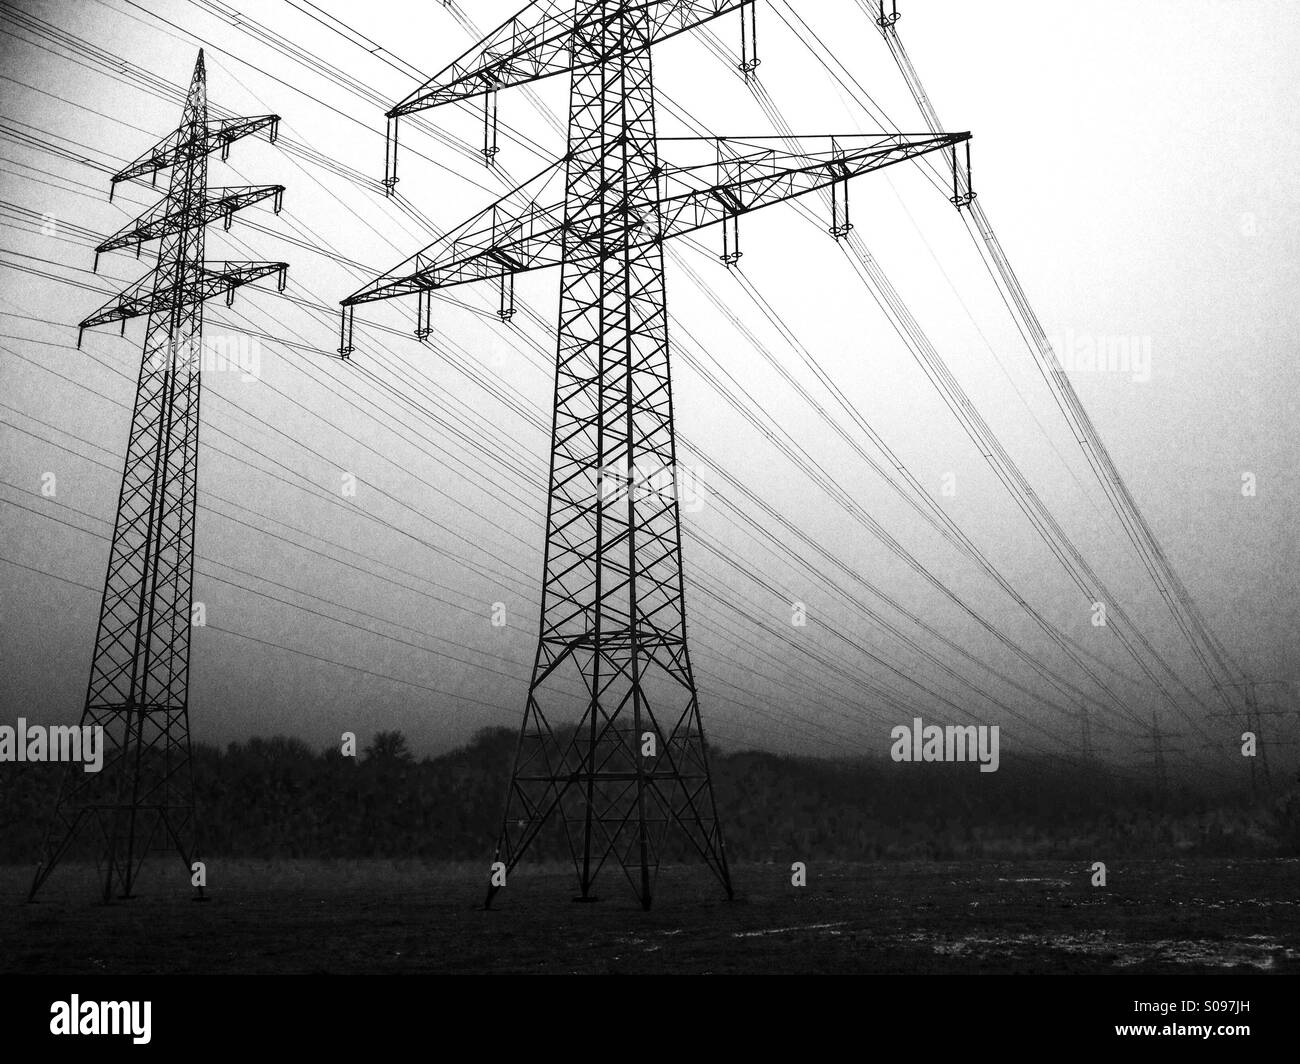 Di energia elettrica ad alta tensione, cavi Leichlingen, Germania. Foto Stock